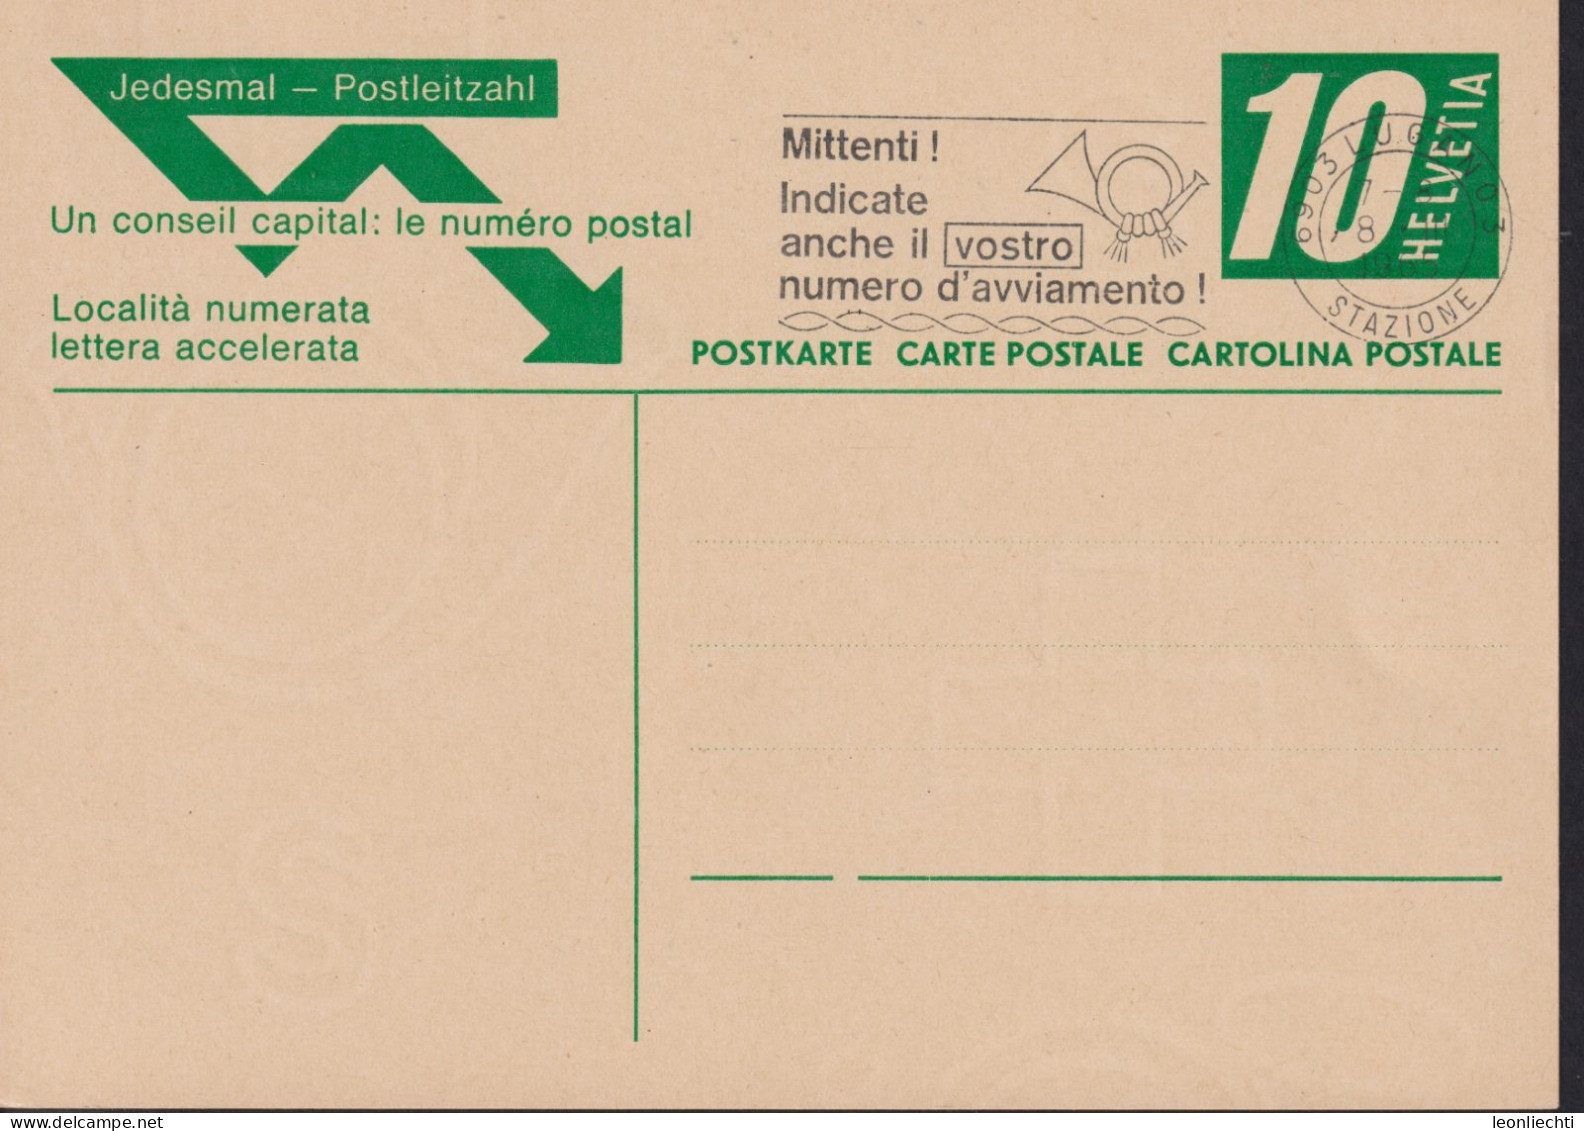 1965, Jedesmal-Postleitzahl Zum:195 10 Cts  ⵙ LUGANO 3 Flagg: Mittenti ! Indicte Anche Il Vostro Numero `d'avviamento - Stamped Stationery